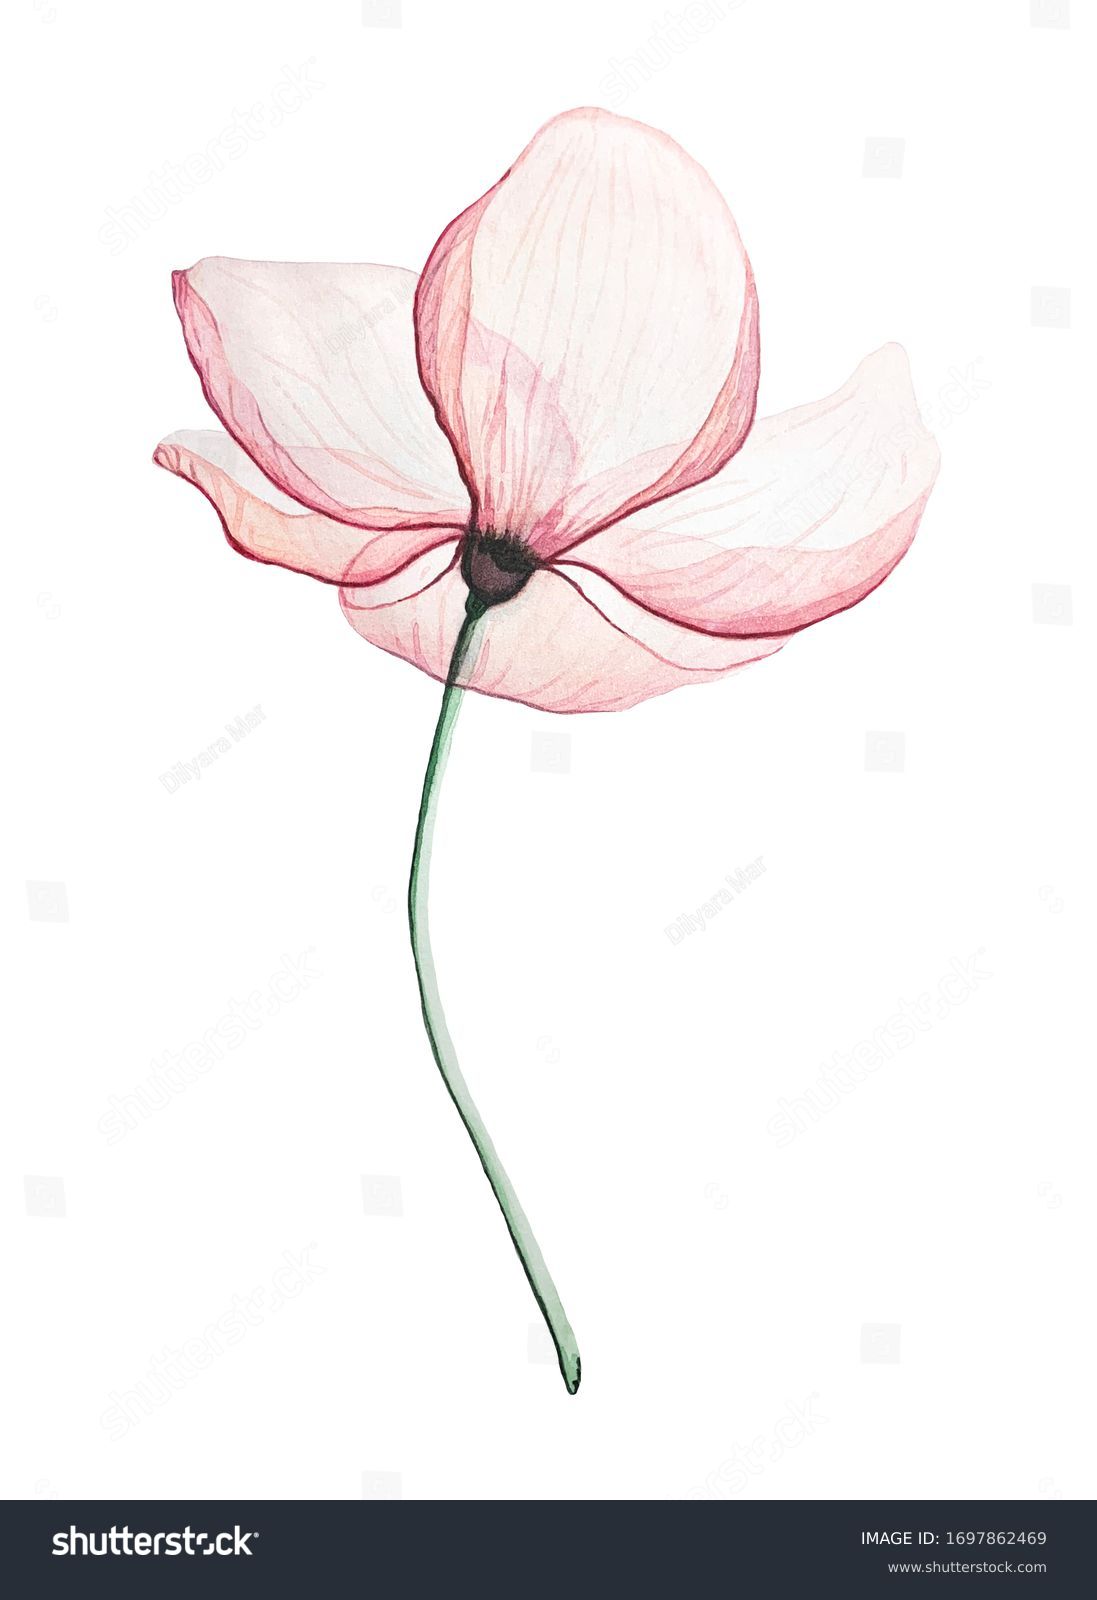 Pink Magnolia flower, on a white background transparent petals delicate watercolour technique #1697862469